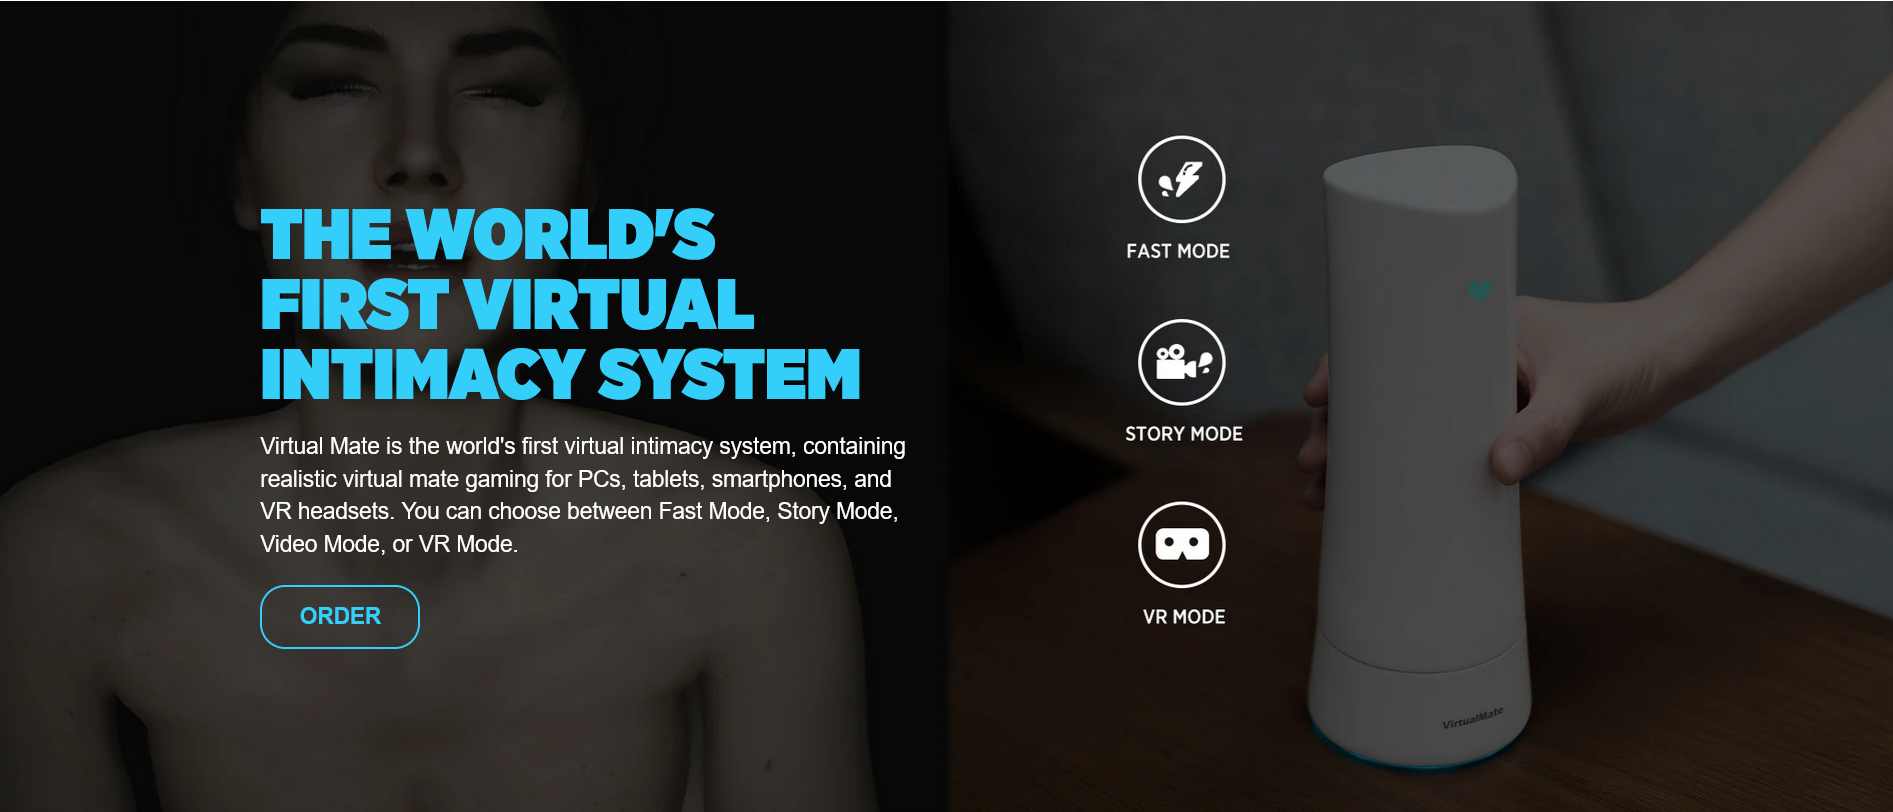 Virtual Mate Das erste virtuelle Intimitätssystem der Welt